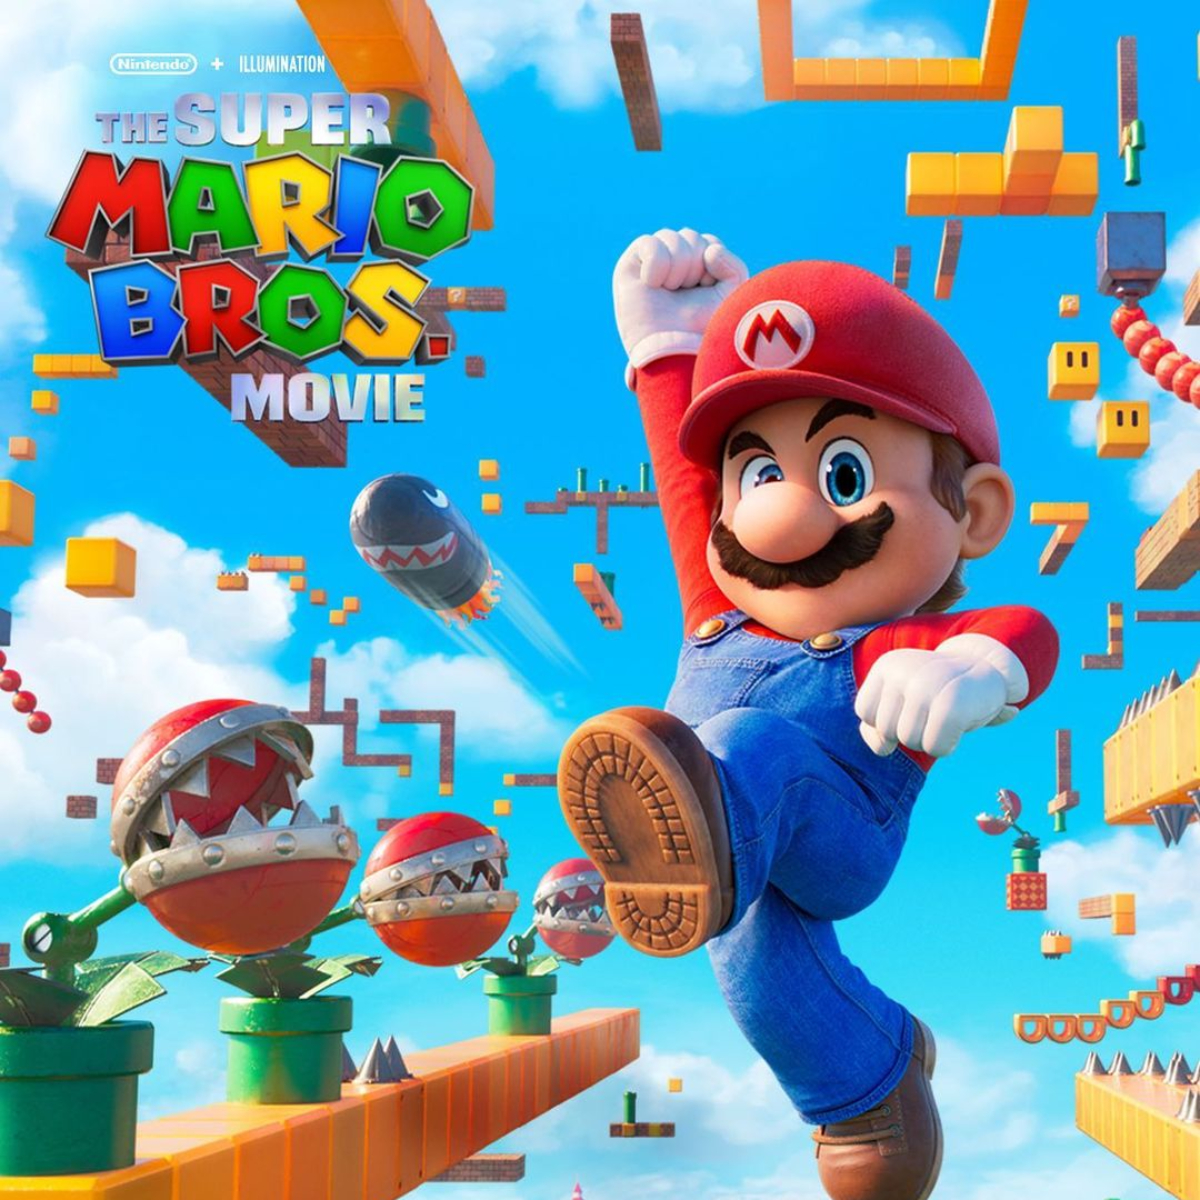 Super Mario Bros, de videojuego legendario a película del año - San Diego  Union-Tribune en Español